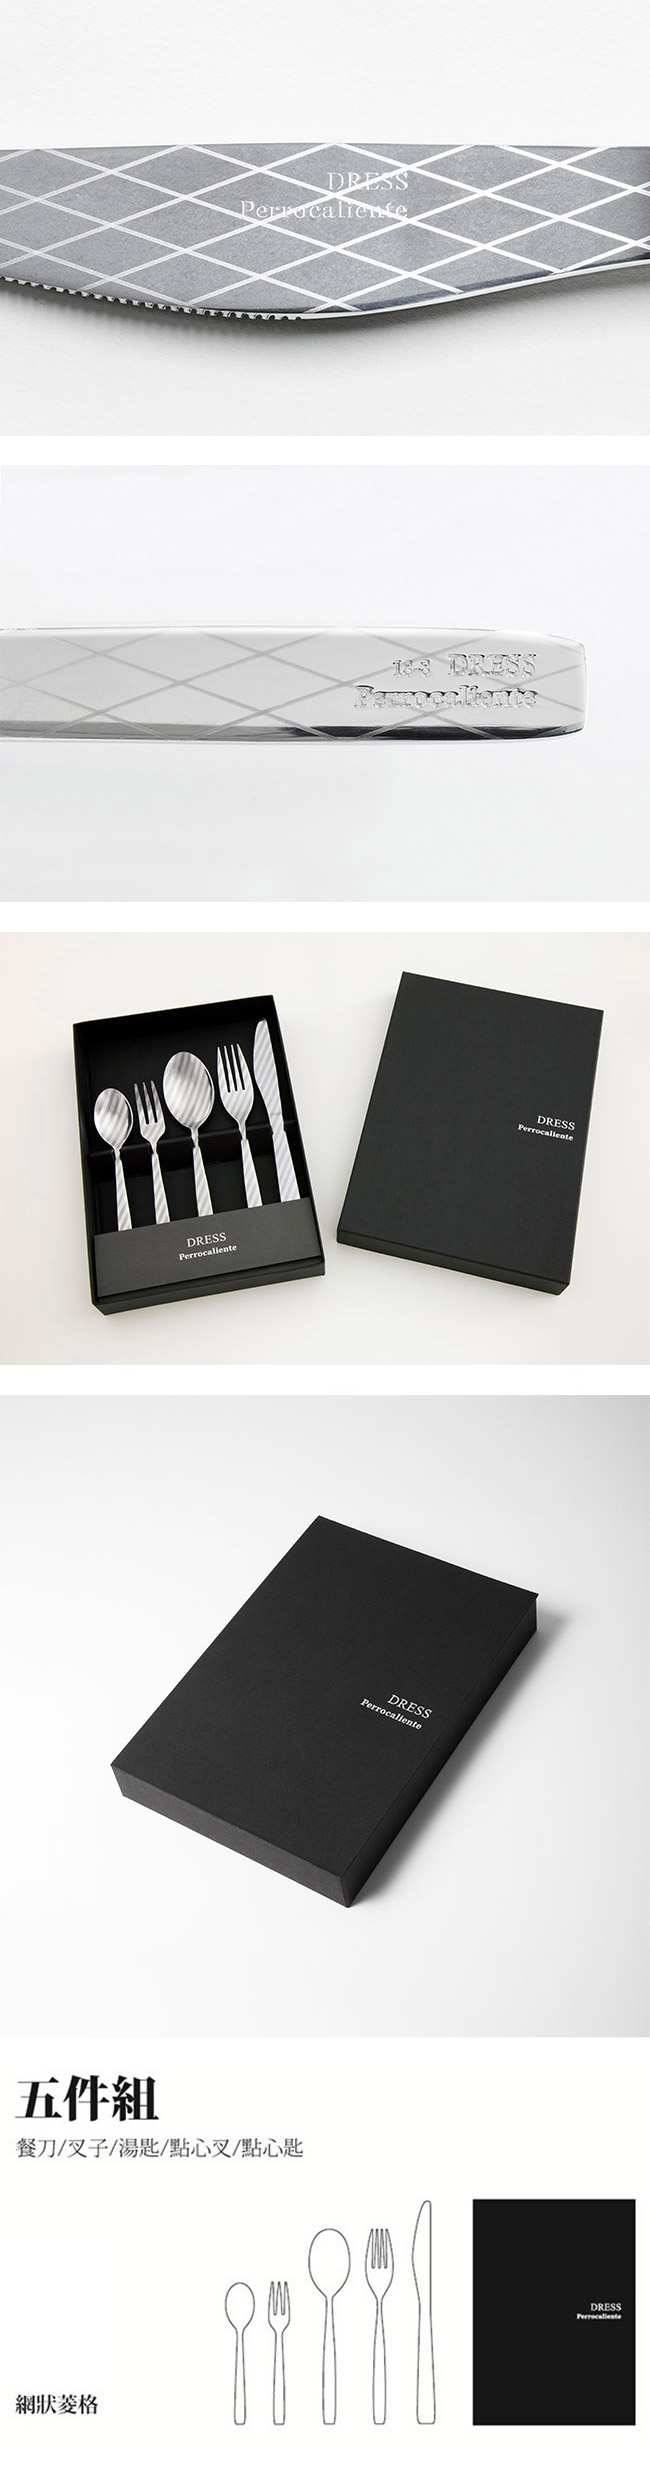 【4/23~4/29精選品牌9折優惠】Perrocaliente Dress Gift Set 銀色盒裝餐具組 五件組 網狀菱格